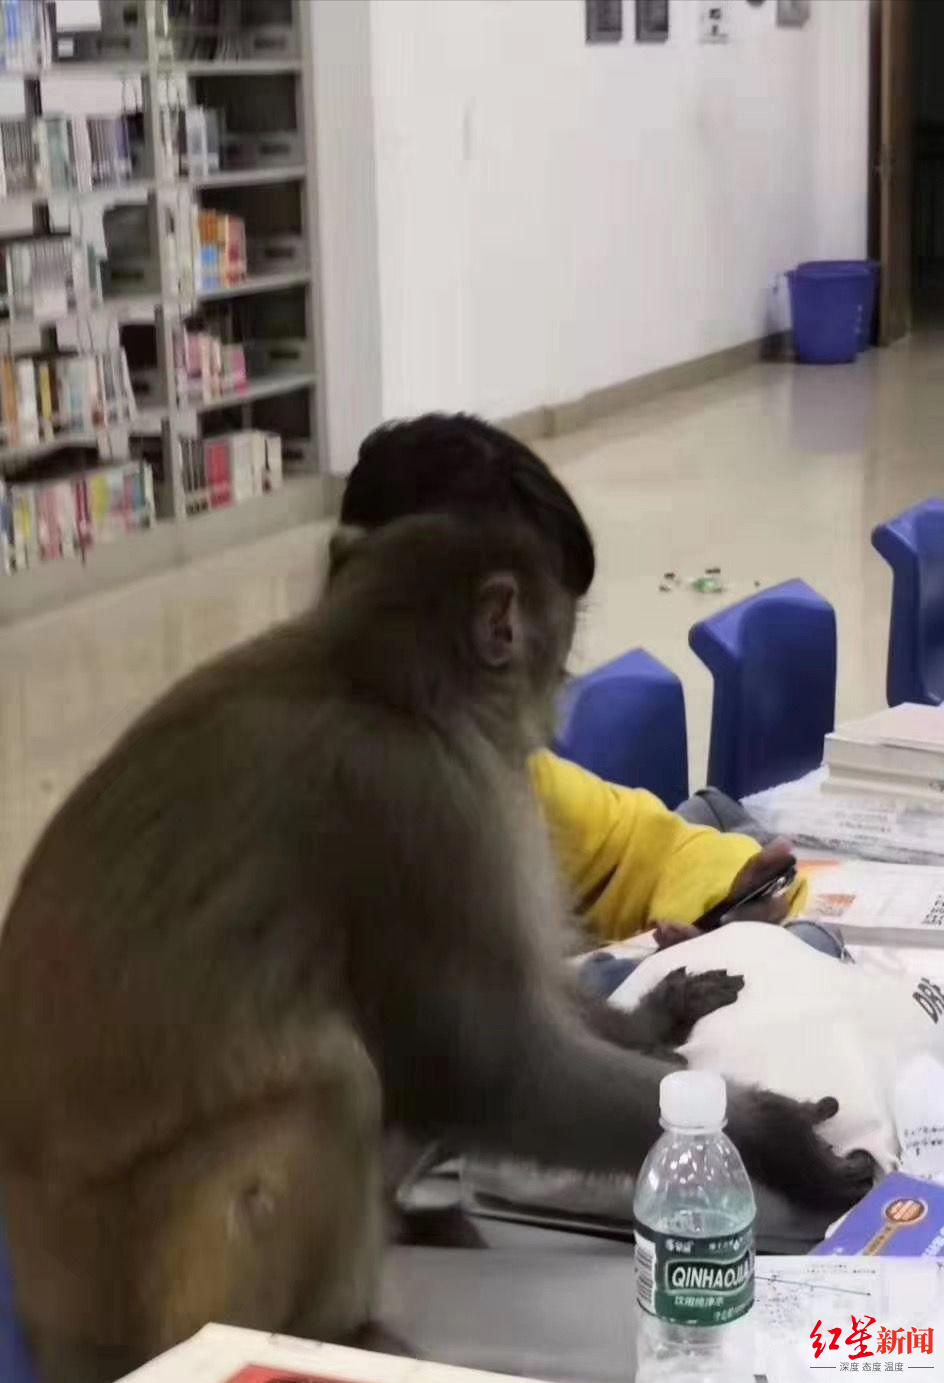 ▲泸山猴子到山下高校图书馆滋扰